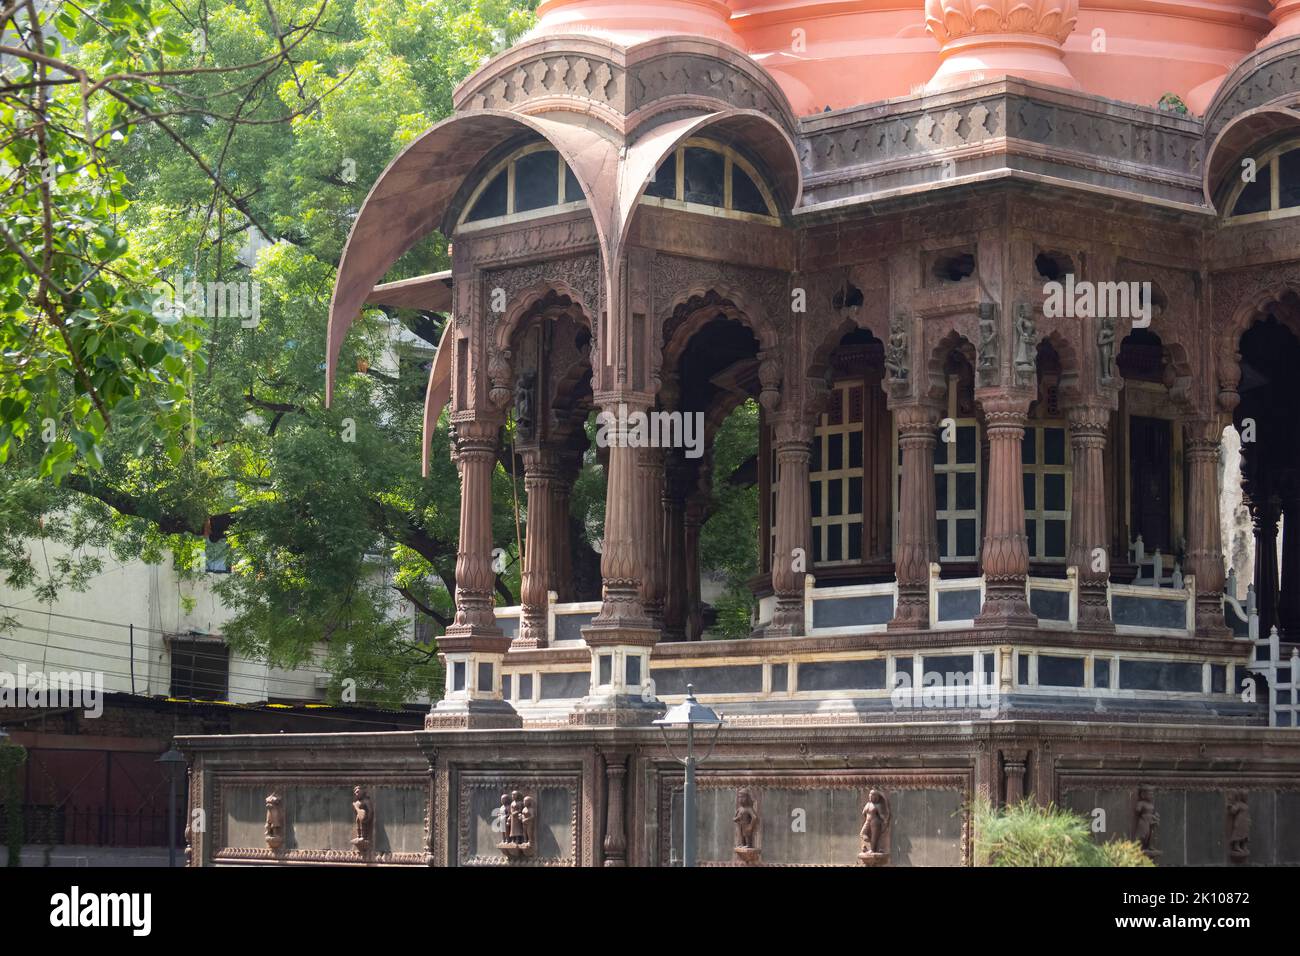 Bögen und Säulen von Boliya Sarkar KI Chhatri, Indore, Madhya Pradesh. Auch bekannt als Malhar Rao Chhatri. Indische Architektur. Alte Architektur von Stockfoto